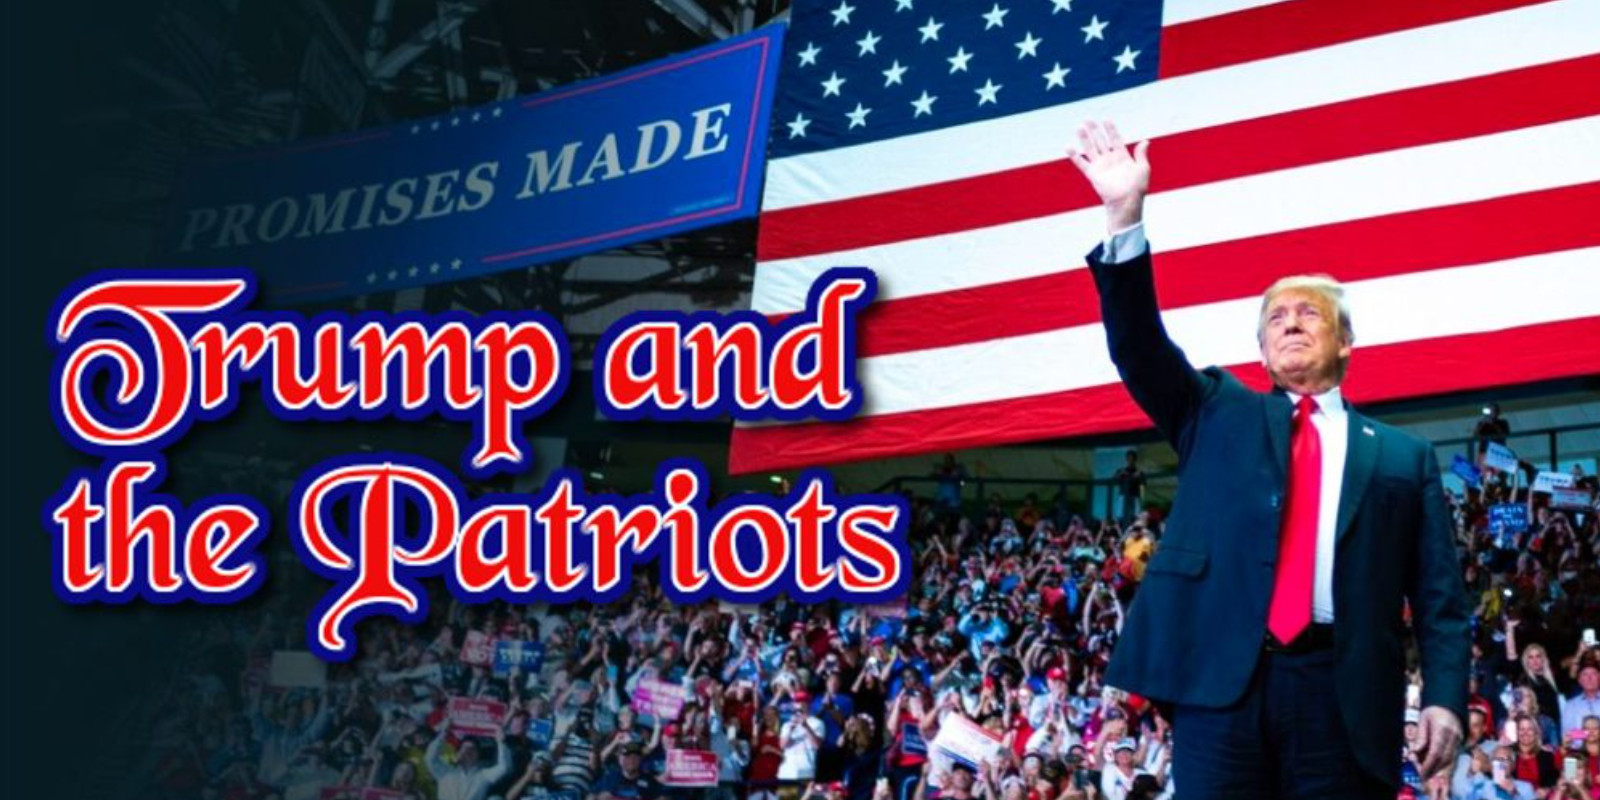 Trump and the Patriots com